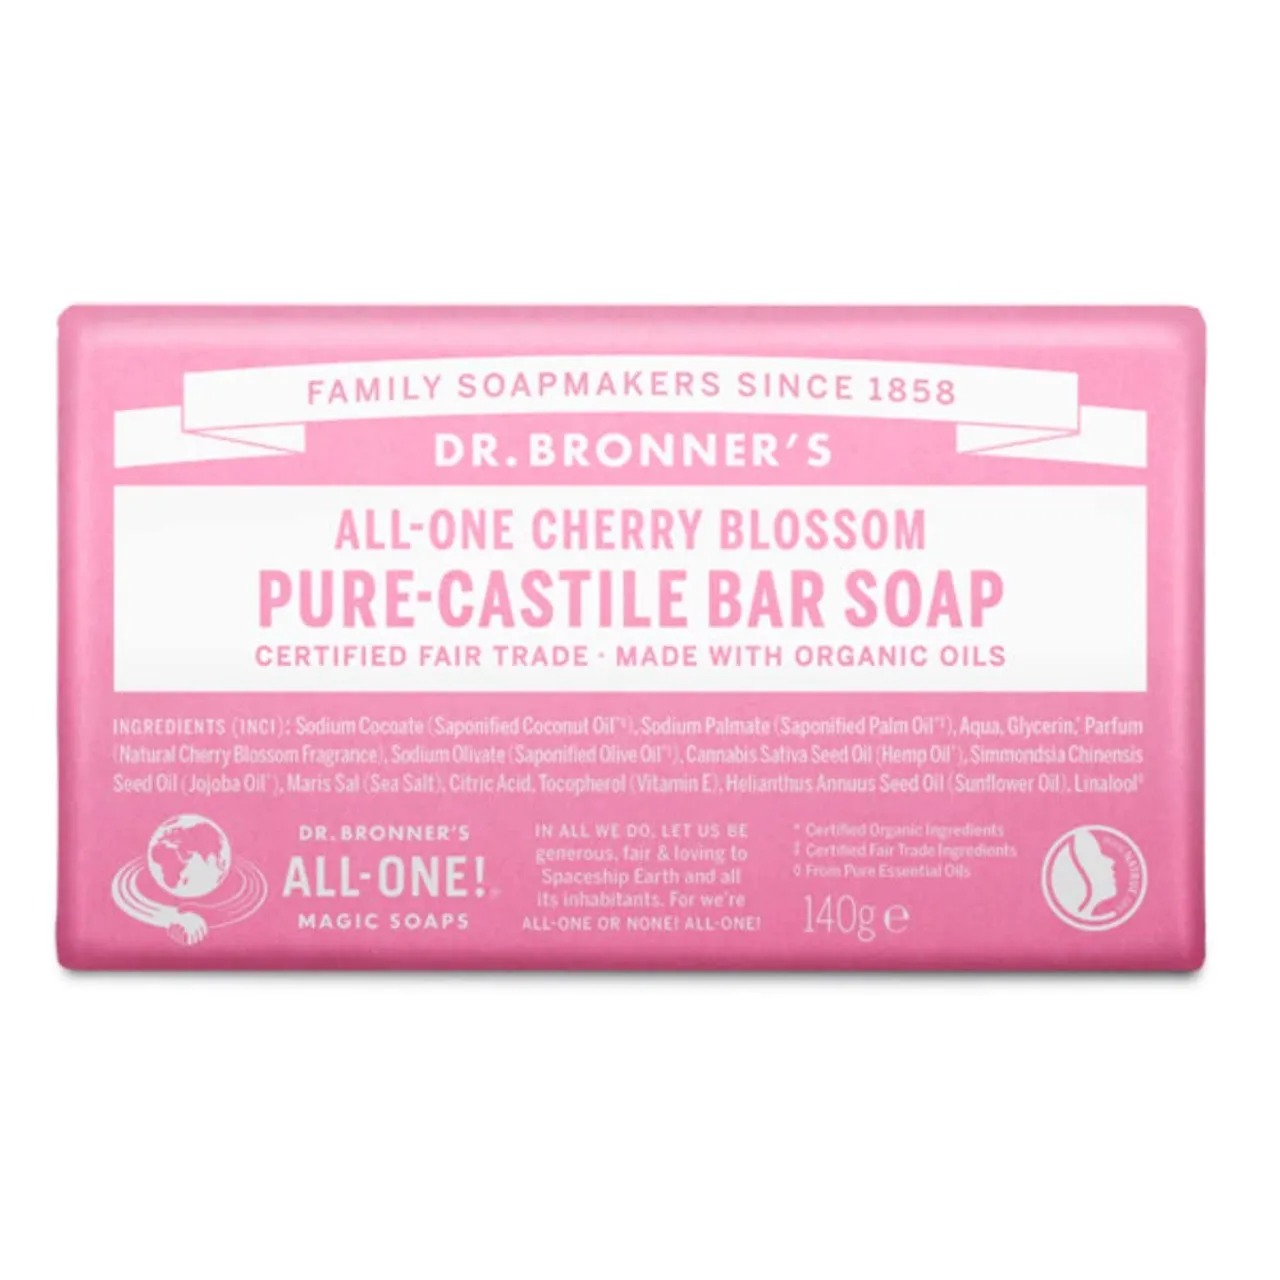 Dr Bronner's Cherry Blossom Pure-Castile Bar Soap